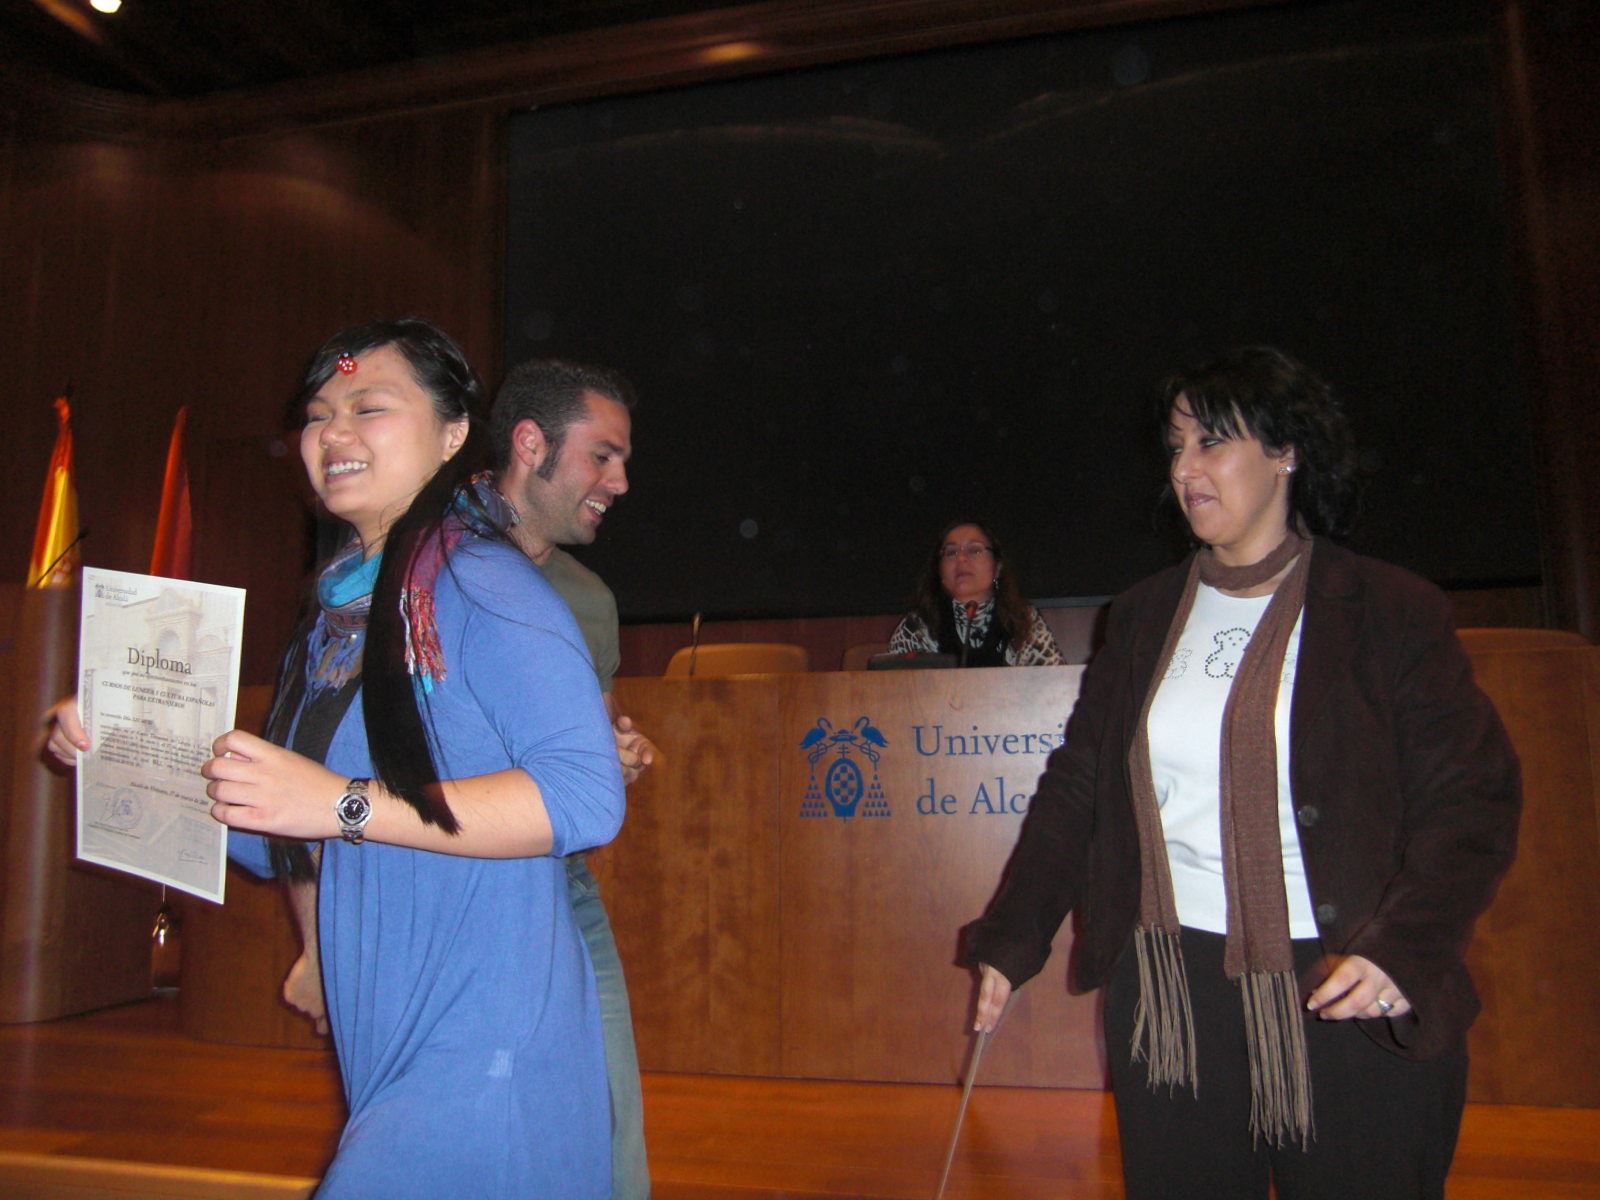 Entrega de diplomas (invierno 2009)